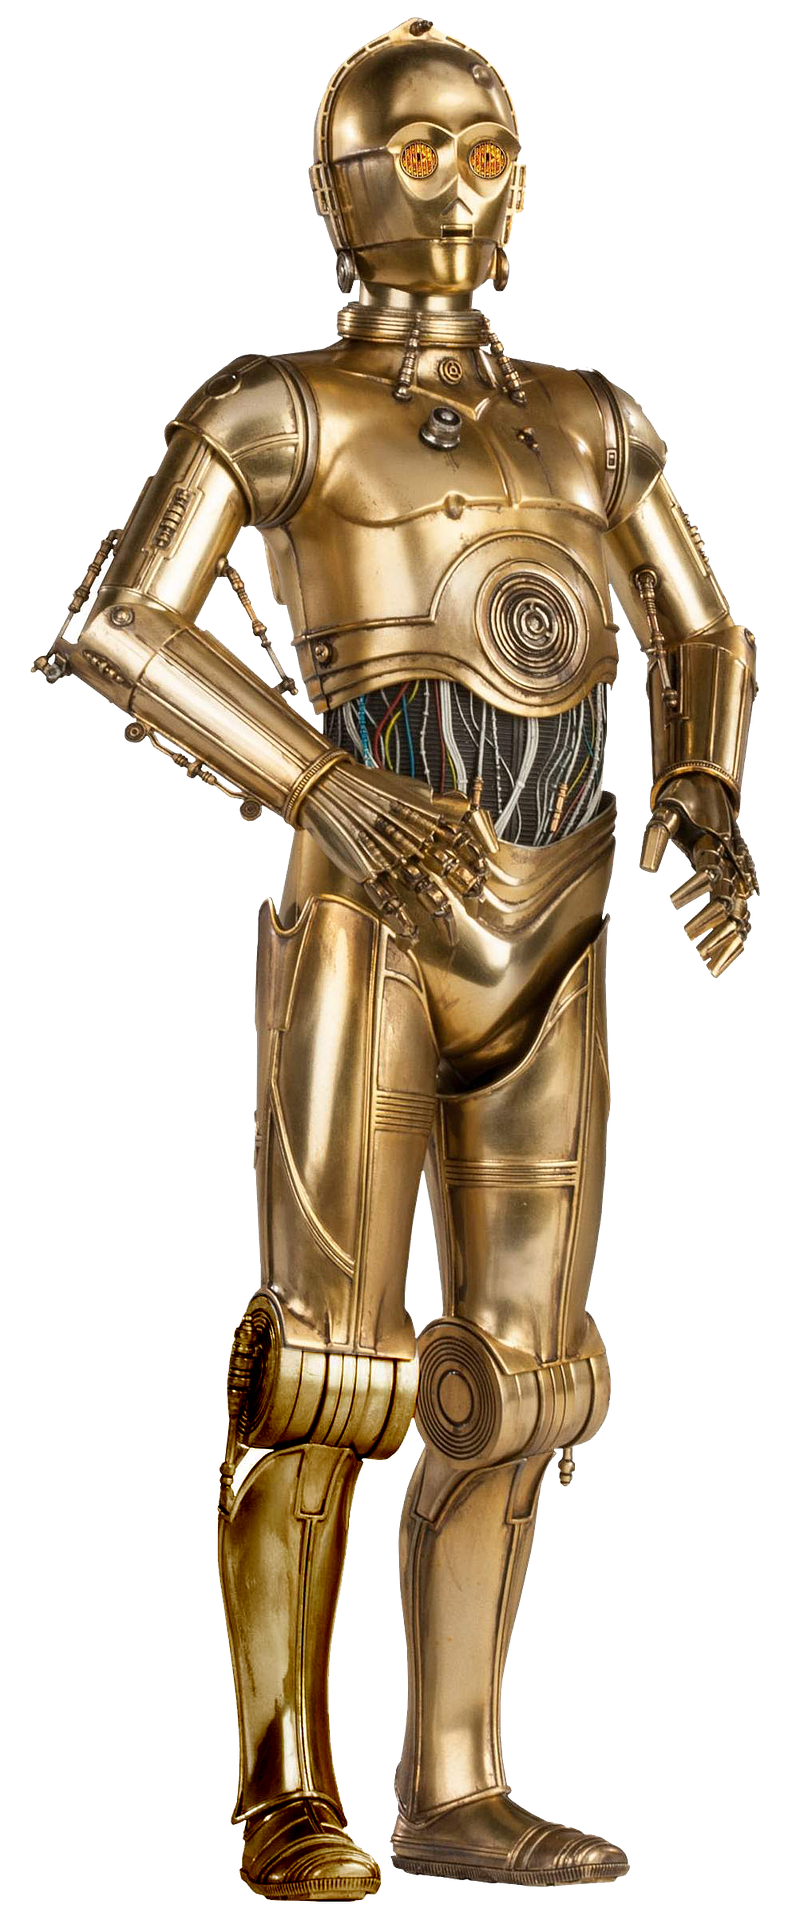 Robot de ficción, que aparece en las películas de Star Wars, especializado en el servicio a los humanos. 